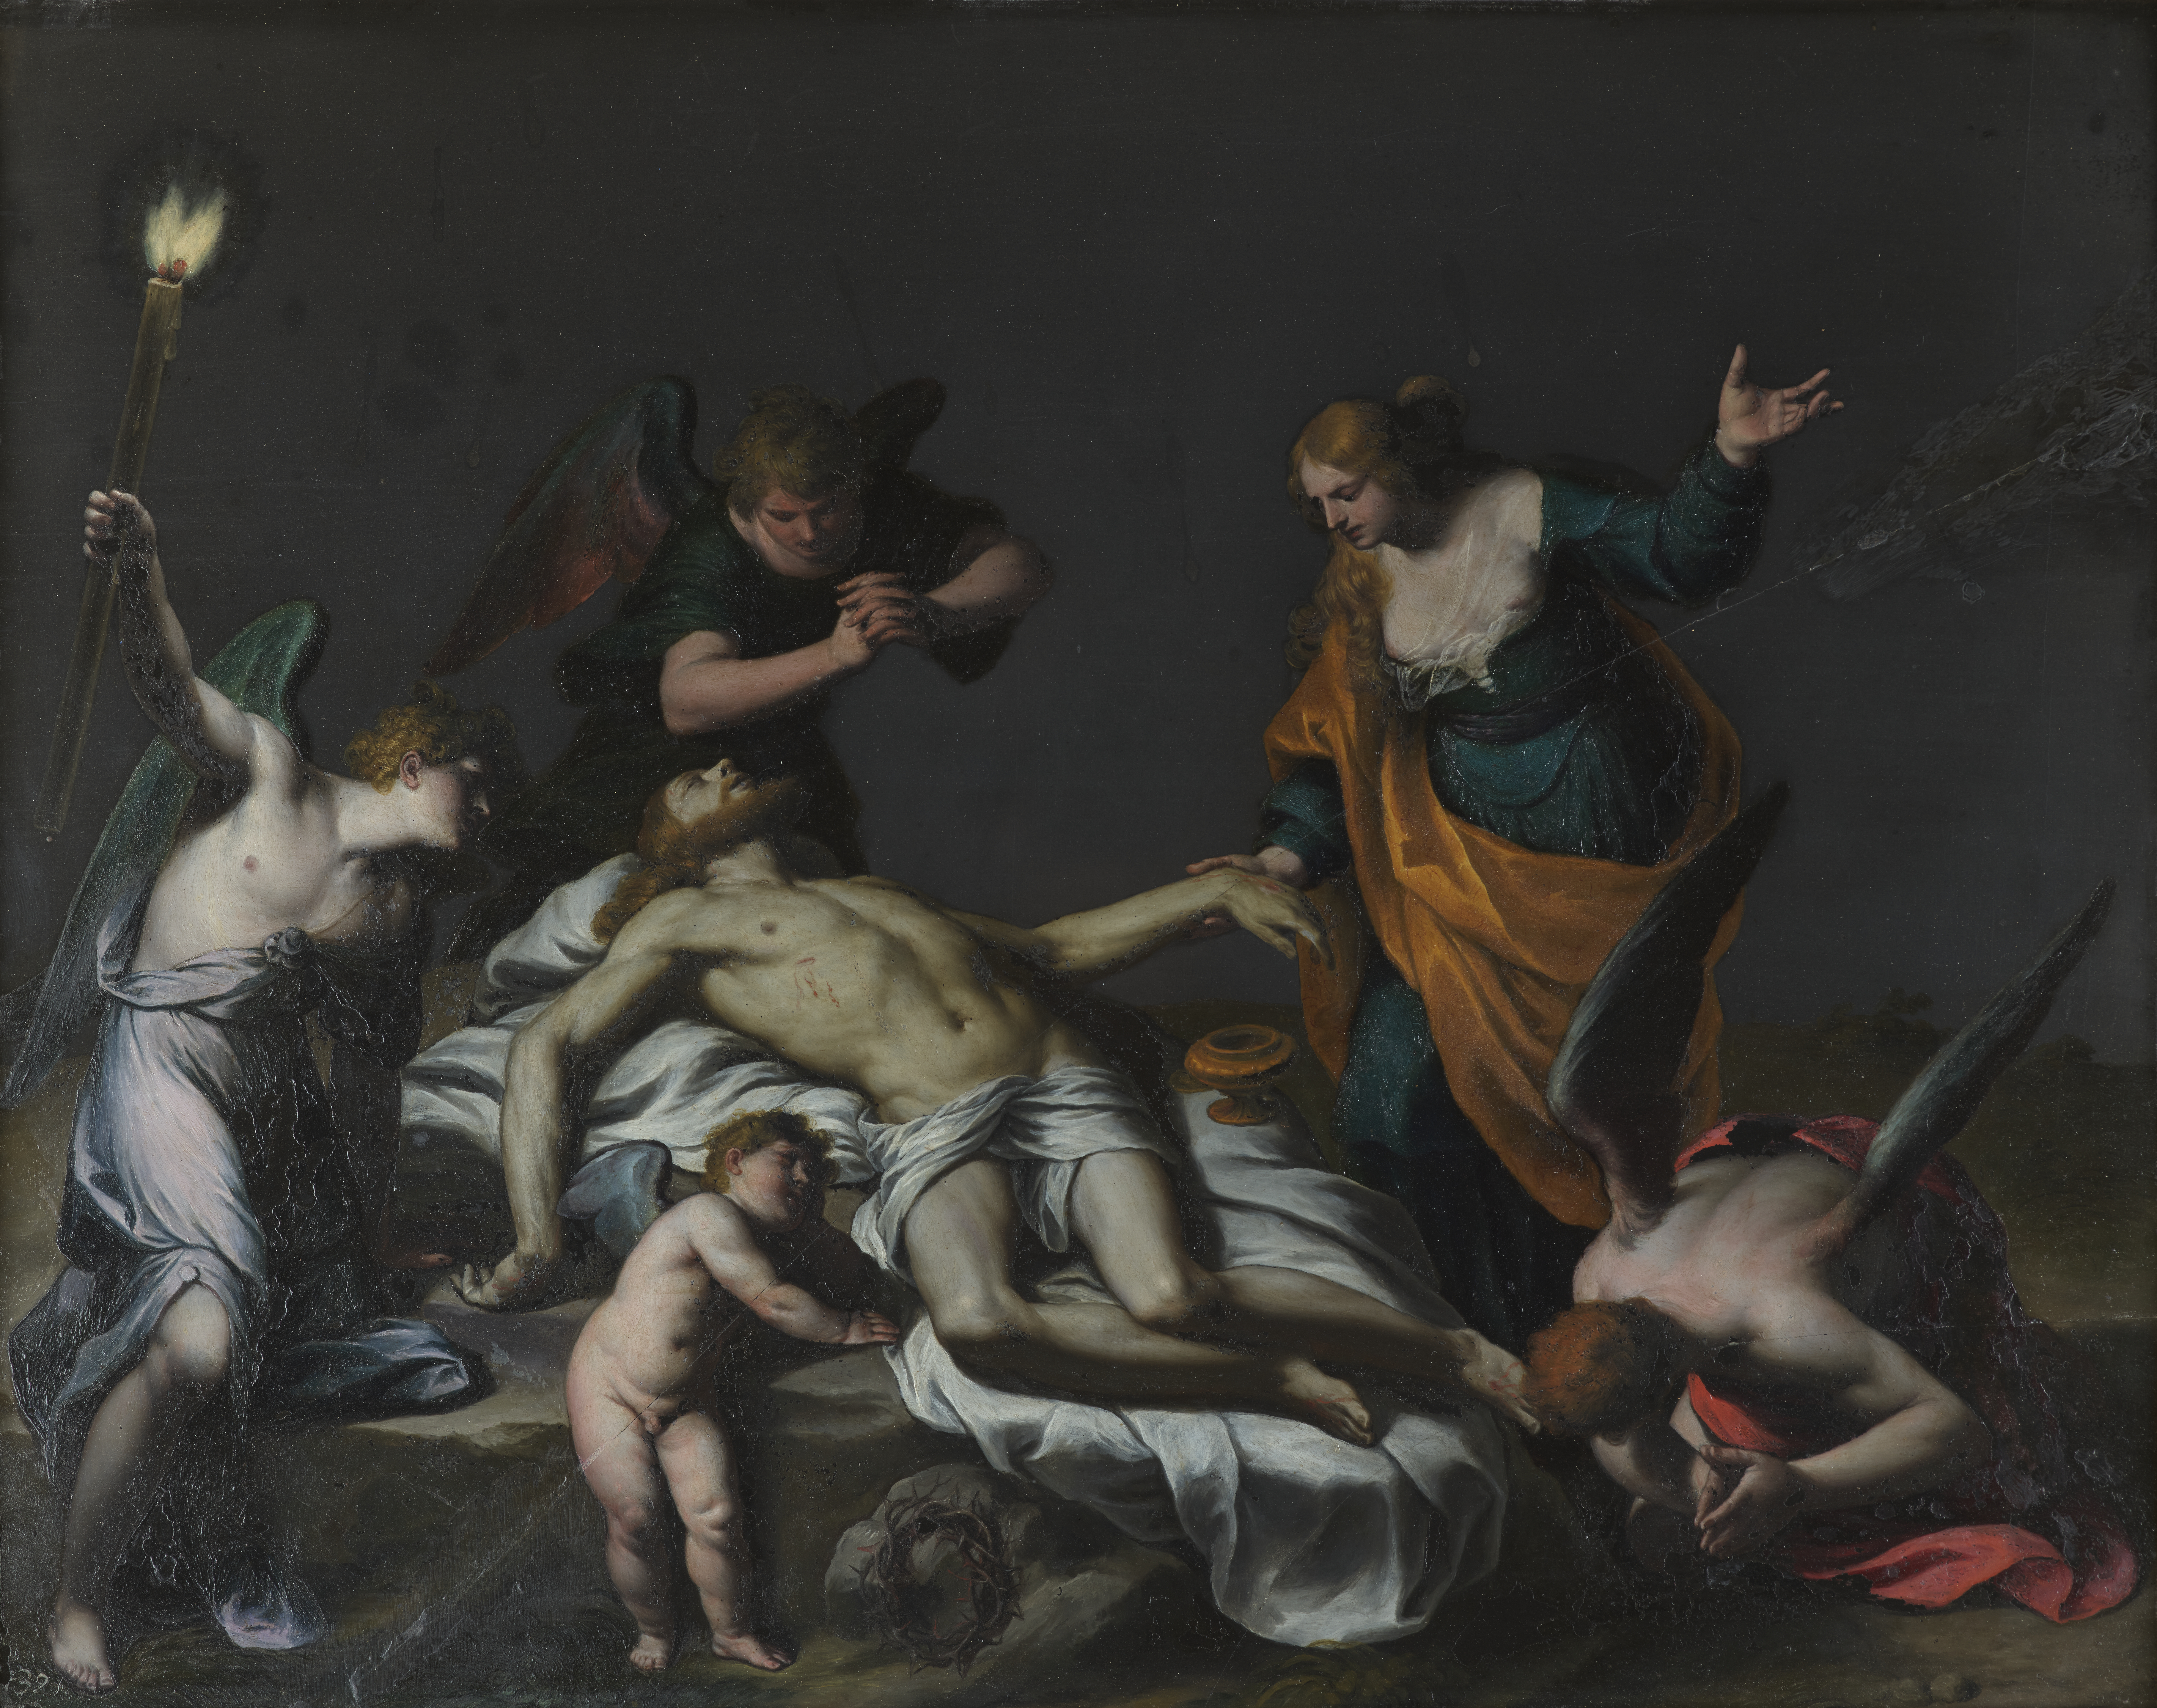 Alessandro Turchi Cristo morto con Maddalena e angeli olio su lavagna 42 x 53 cm Galleria Borghese Roma. %C2%A9 Galleria Borghese